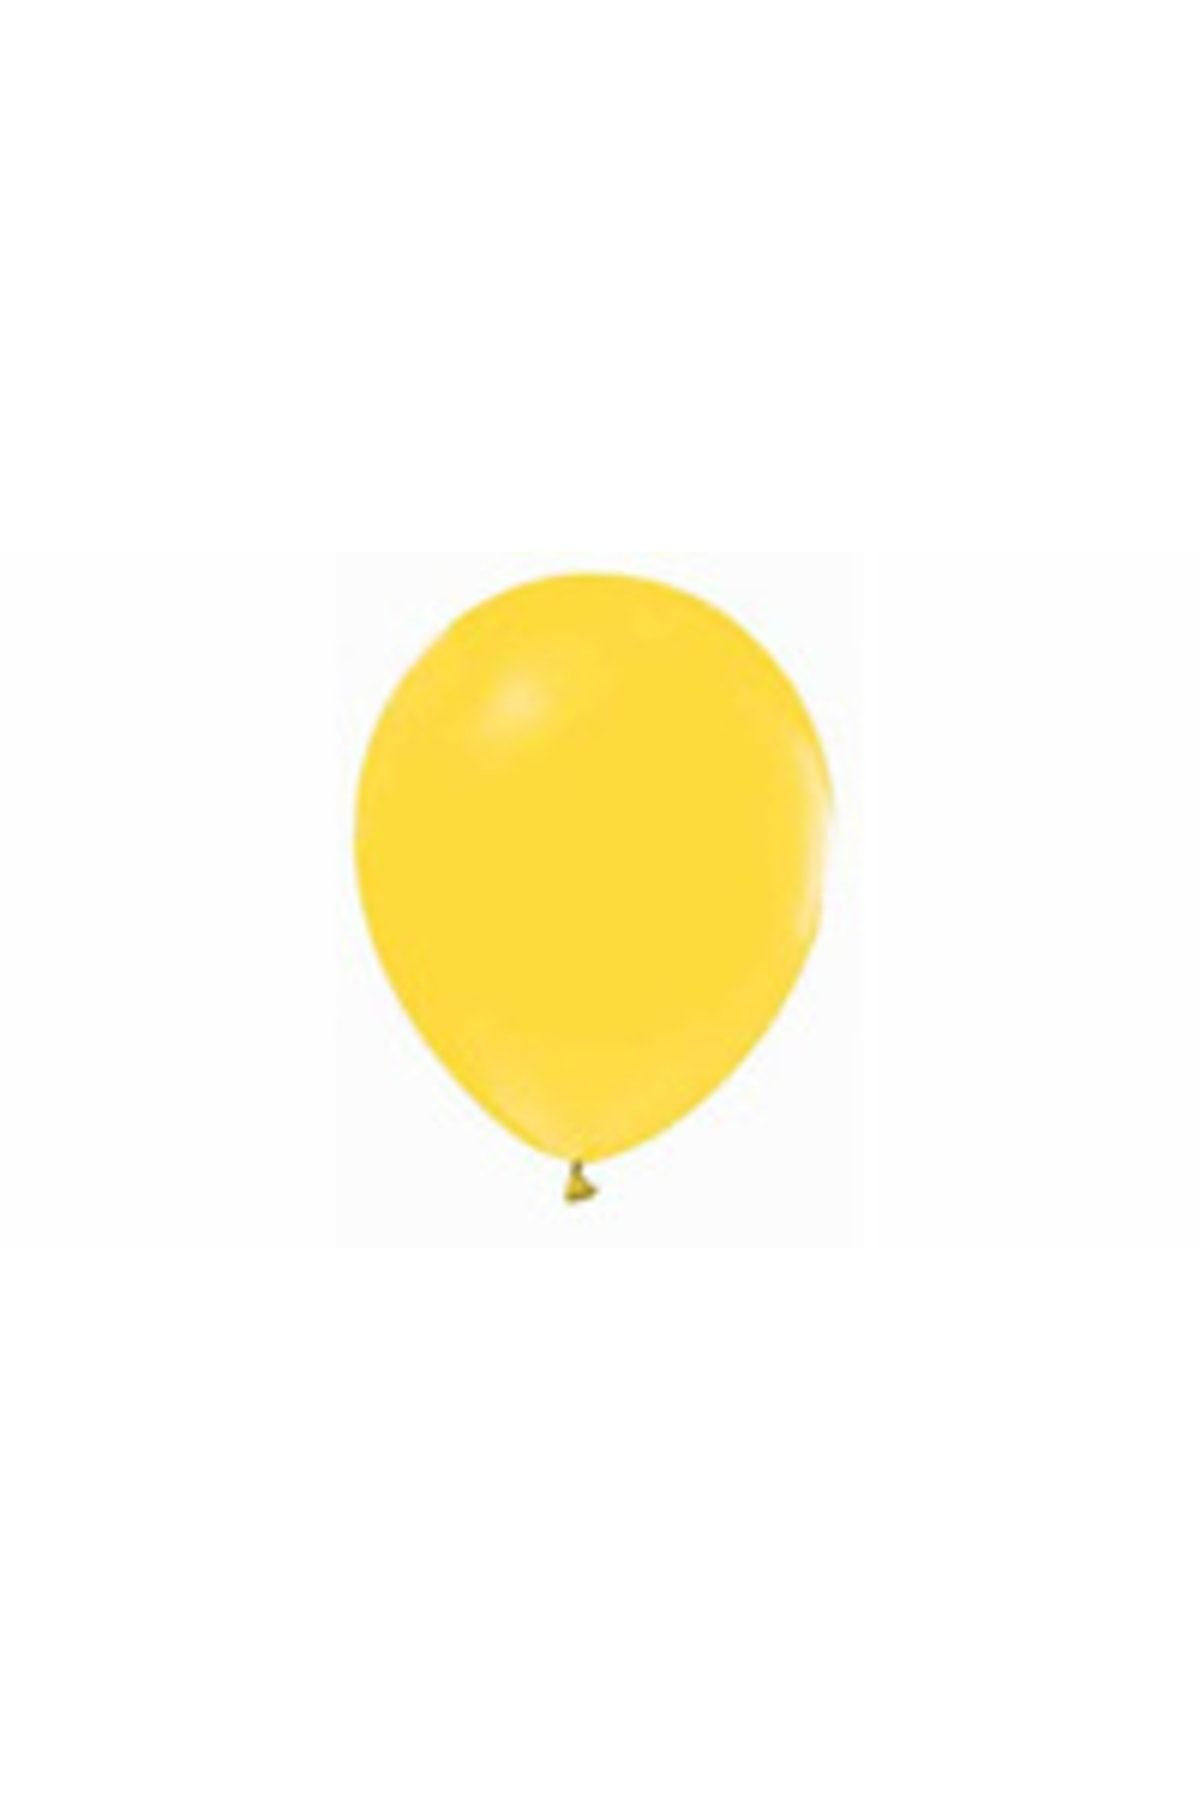 TATLI GÜNLER Balon Sarı 100'lü (2,2 Gr)